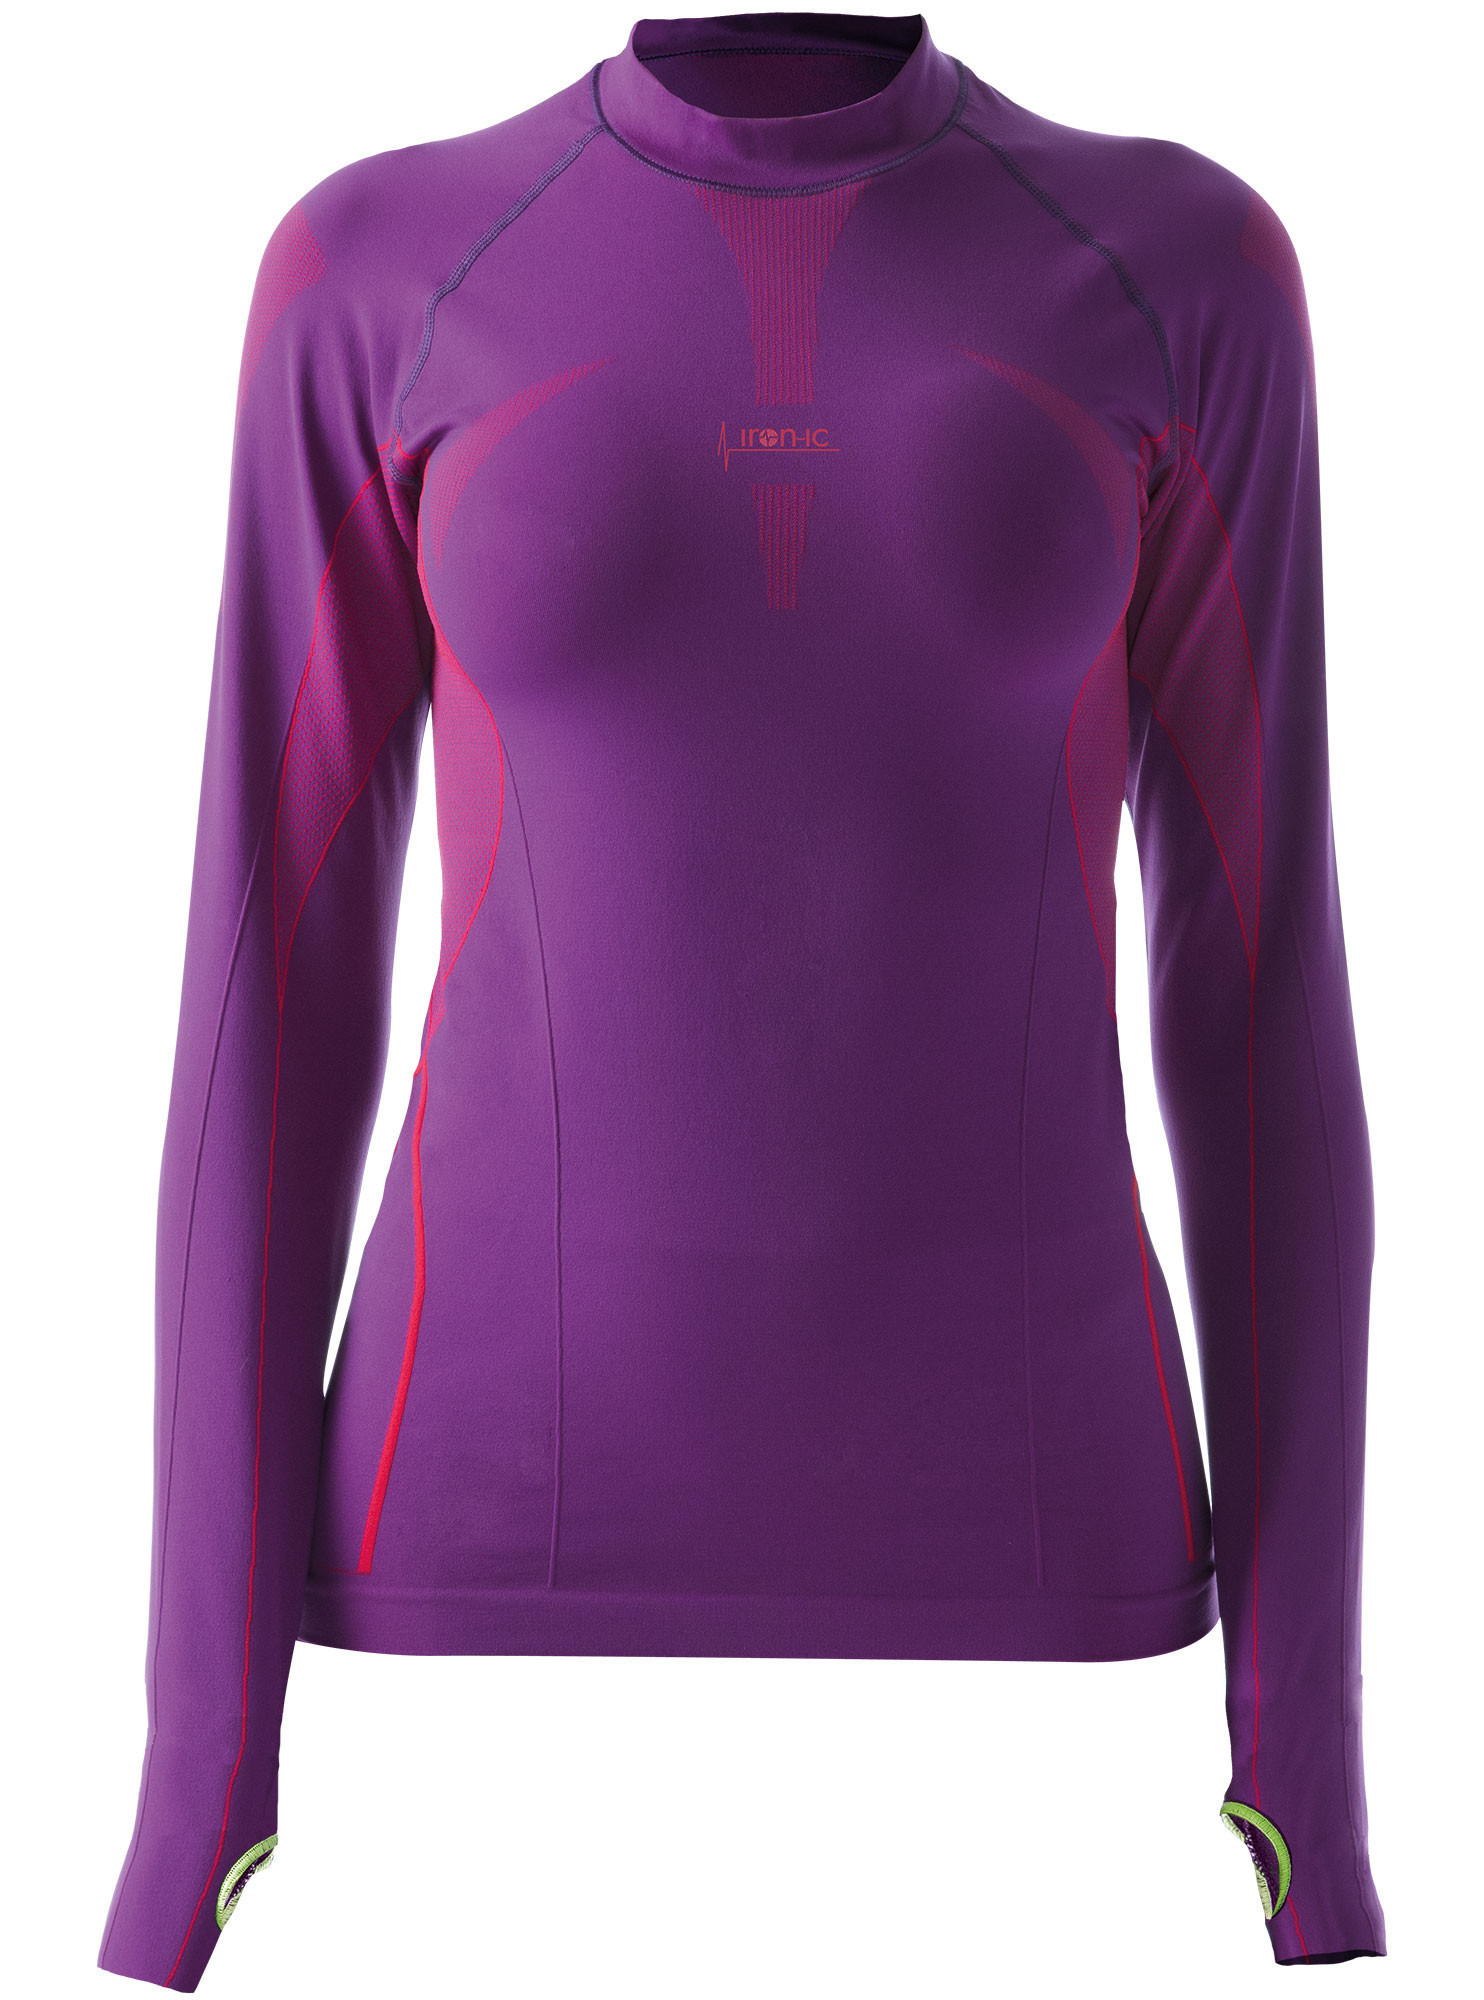 Dámské sportovní tričko s dlouhým rukávem fialová Barva: Violet model 15131932 Velikost: M/L - IRON-IC